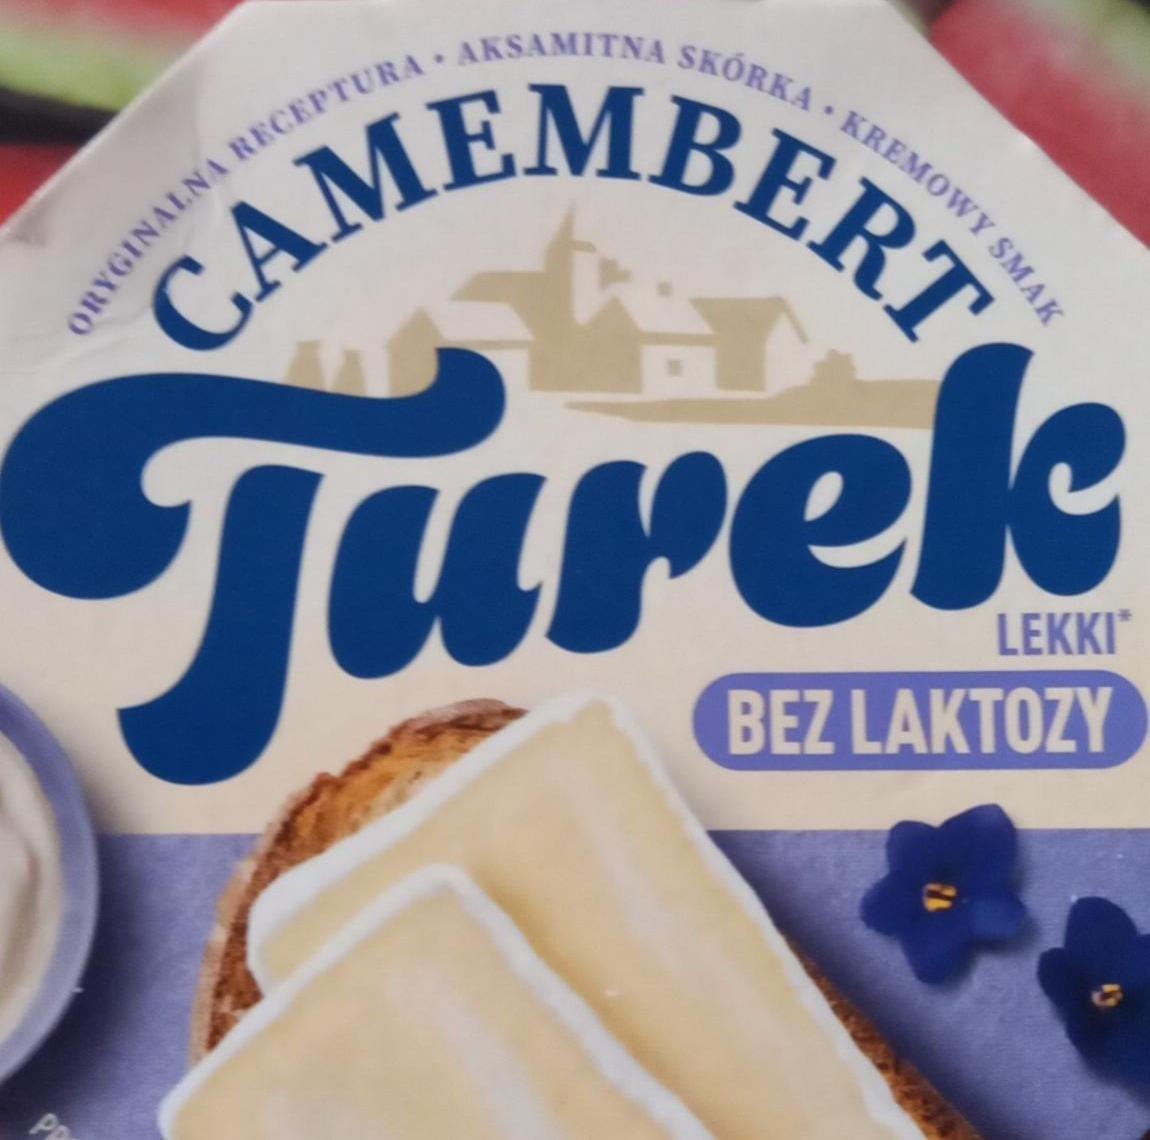 Фото - Сир м'який легкий безлактозний з пліснявою Camembert Turek